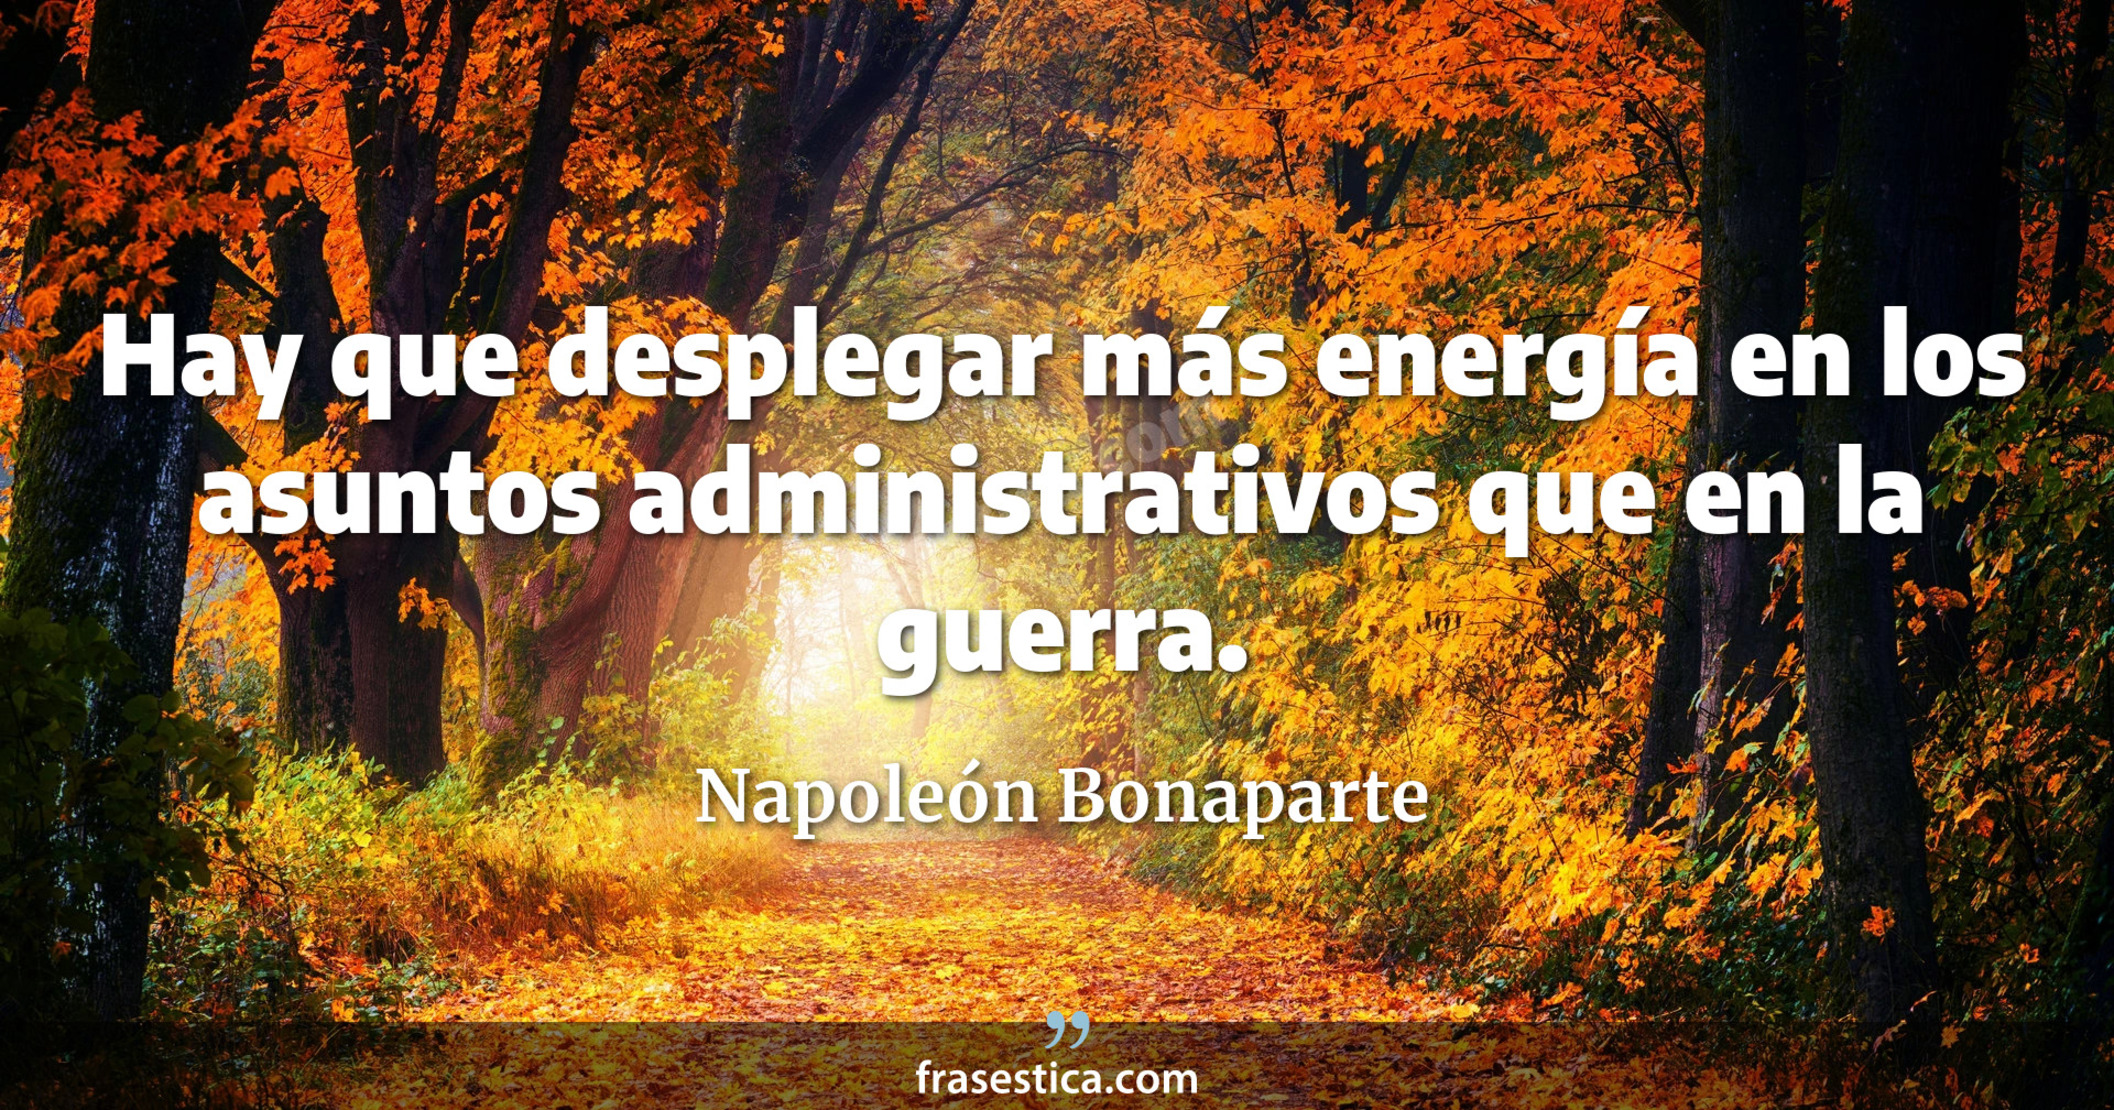 Hay que desplegar más energía en los asuntos administrativos que en la guerra. - Napoleón Bonaparte